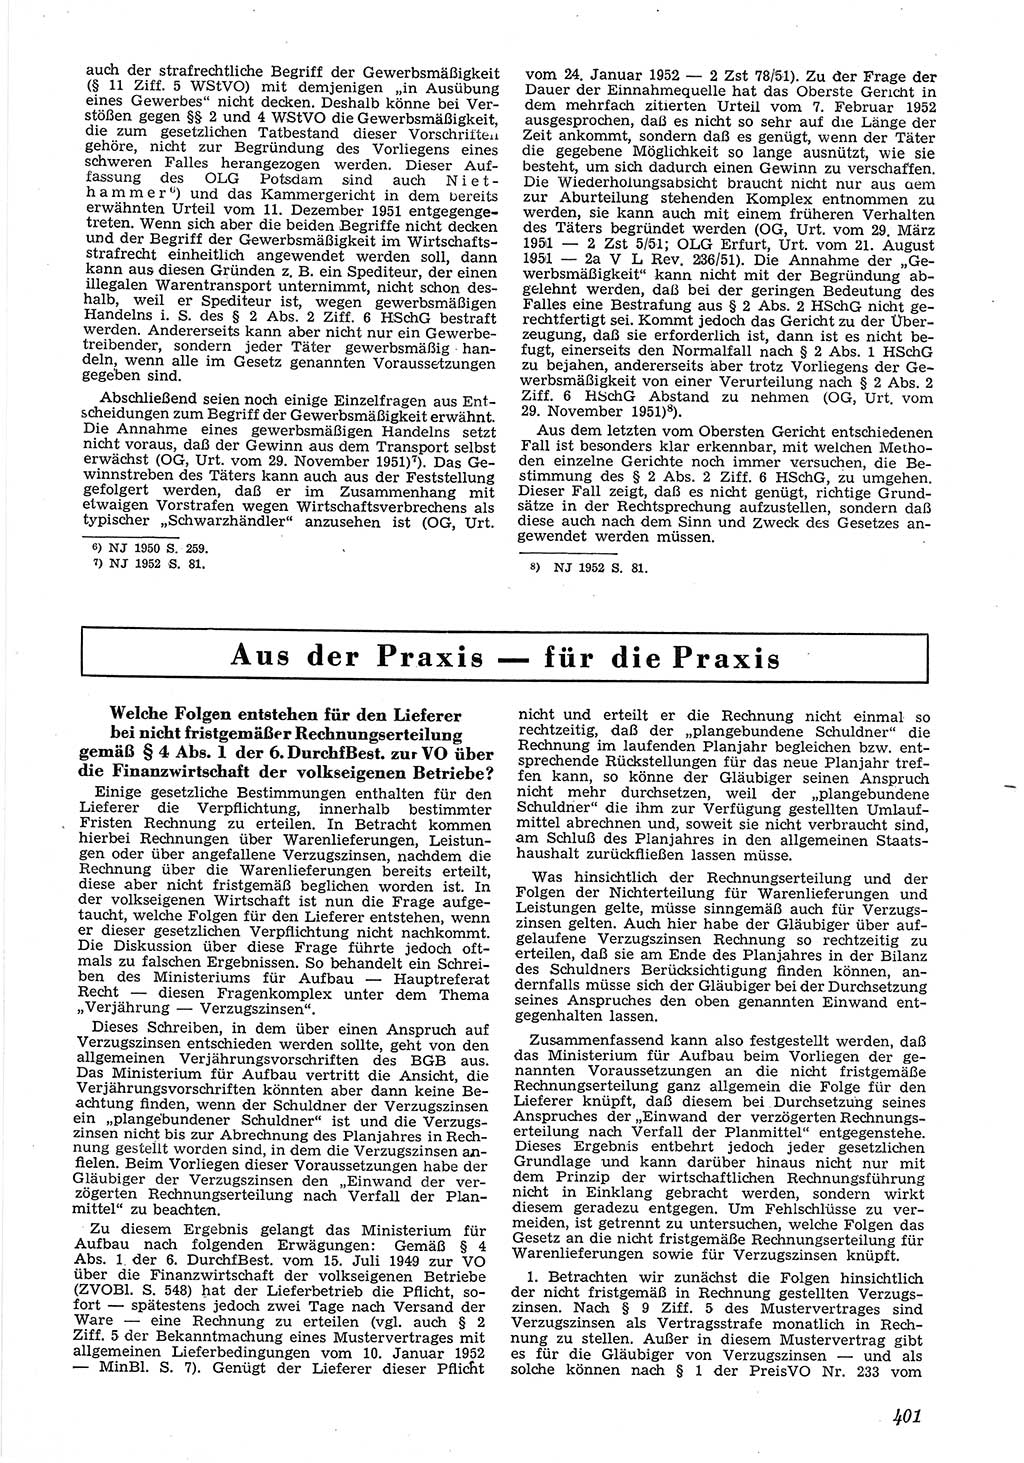 Neue Justiz (NJ), Zeitschrift für Recht und Rechtswissenschaft [Deutsche Demokratische Republik (DDR)], 6. Jahrgang 1952, Seite 401 (NJ DDR 1952, S. 401)